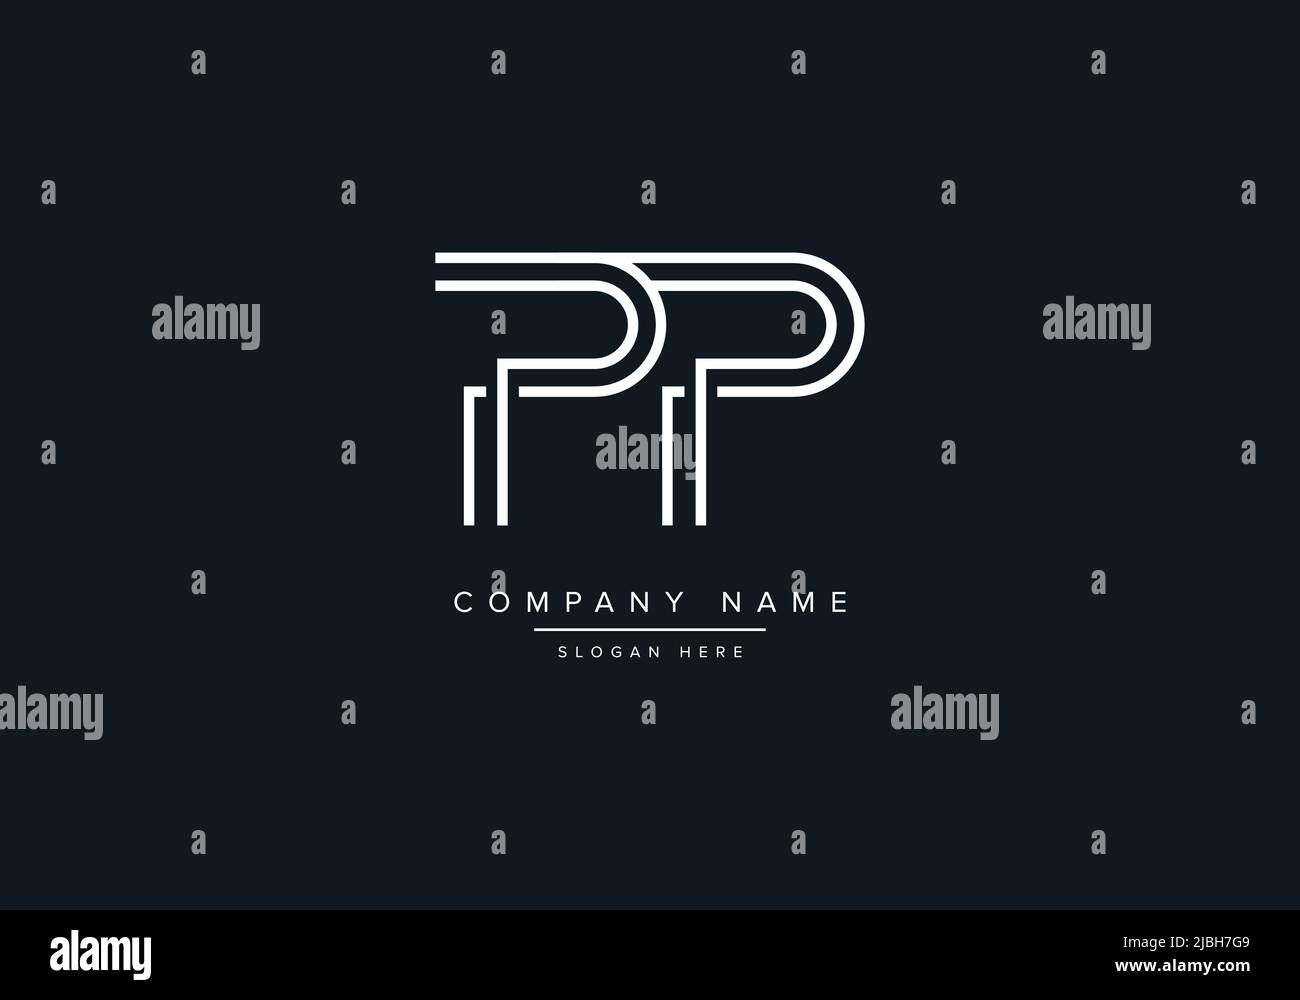 alphabet letters monogram icon logo PP Stock Vector